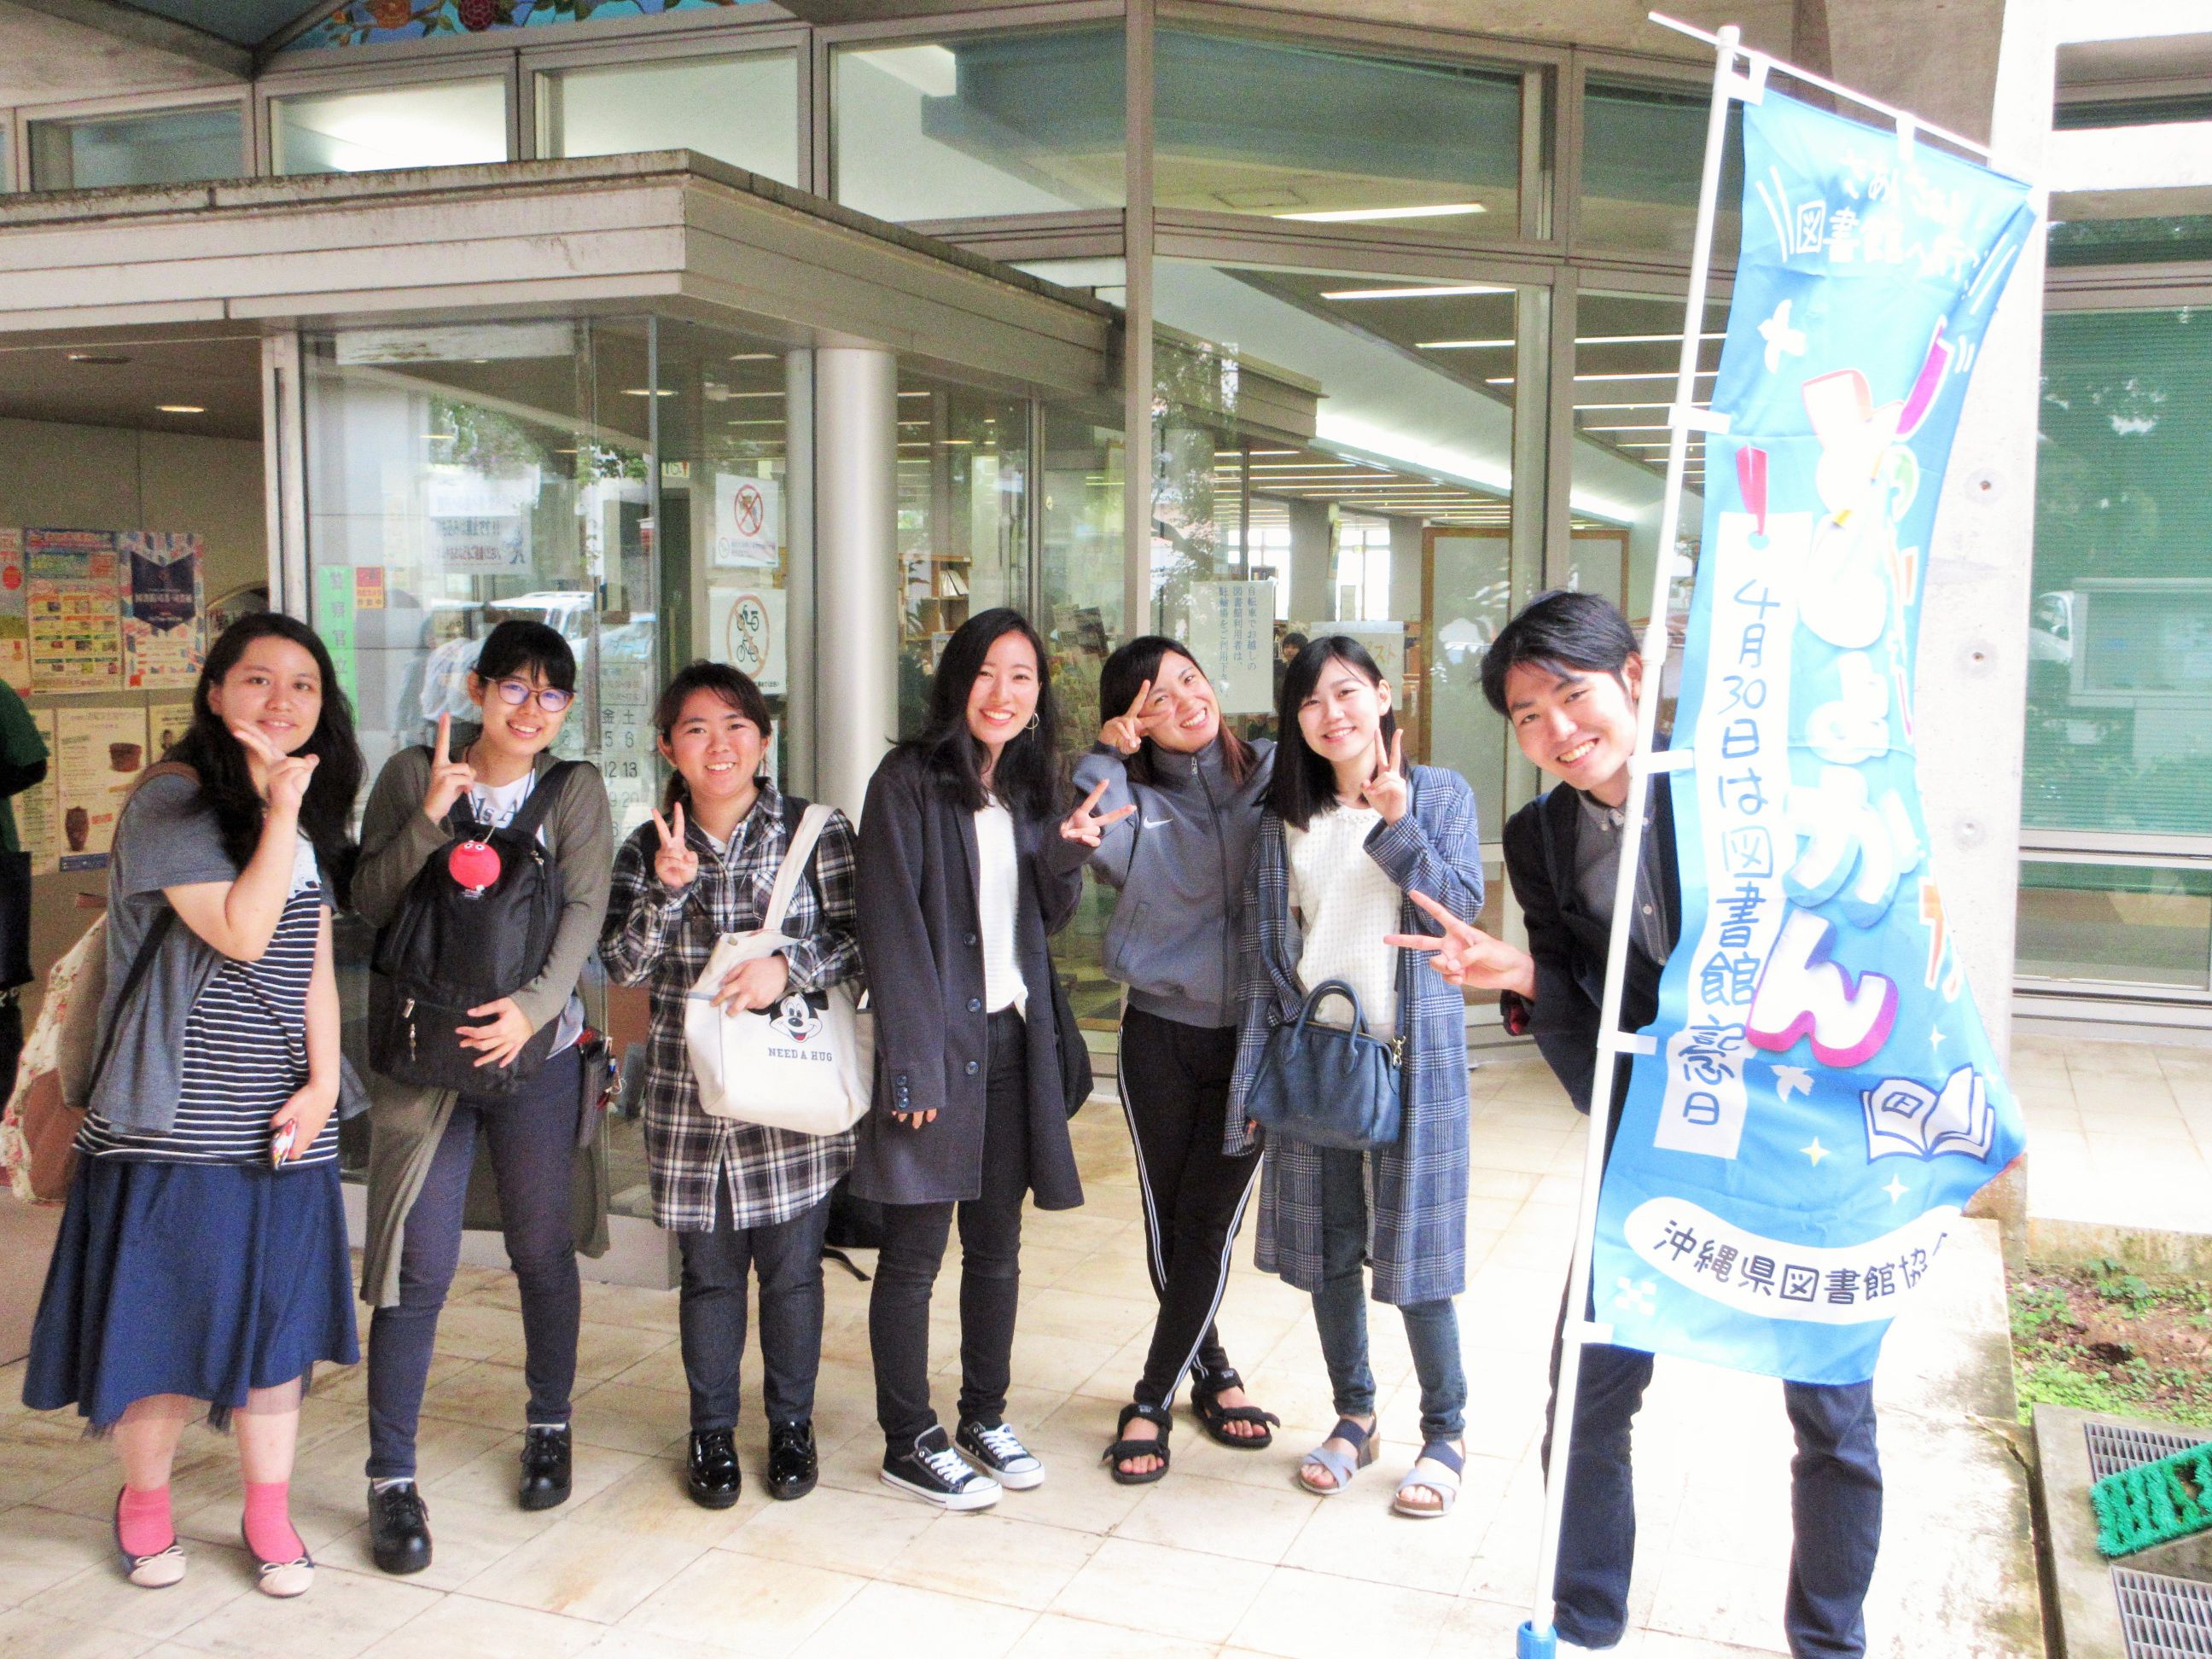 図書館記念日のイベントのお手伝いに行ってきました 司書課程学生が作ったパネル展もやってます 日文のブログ 沖縄国際大学